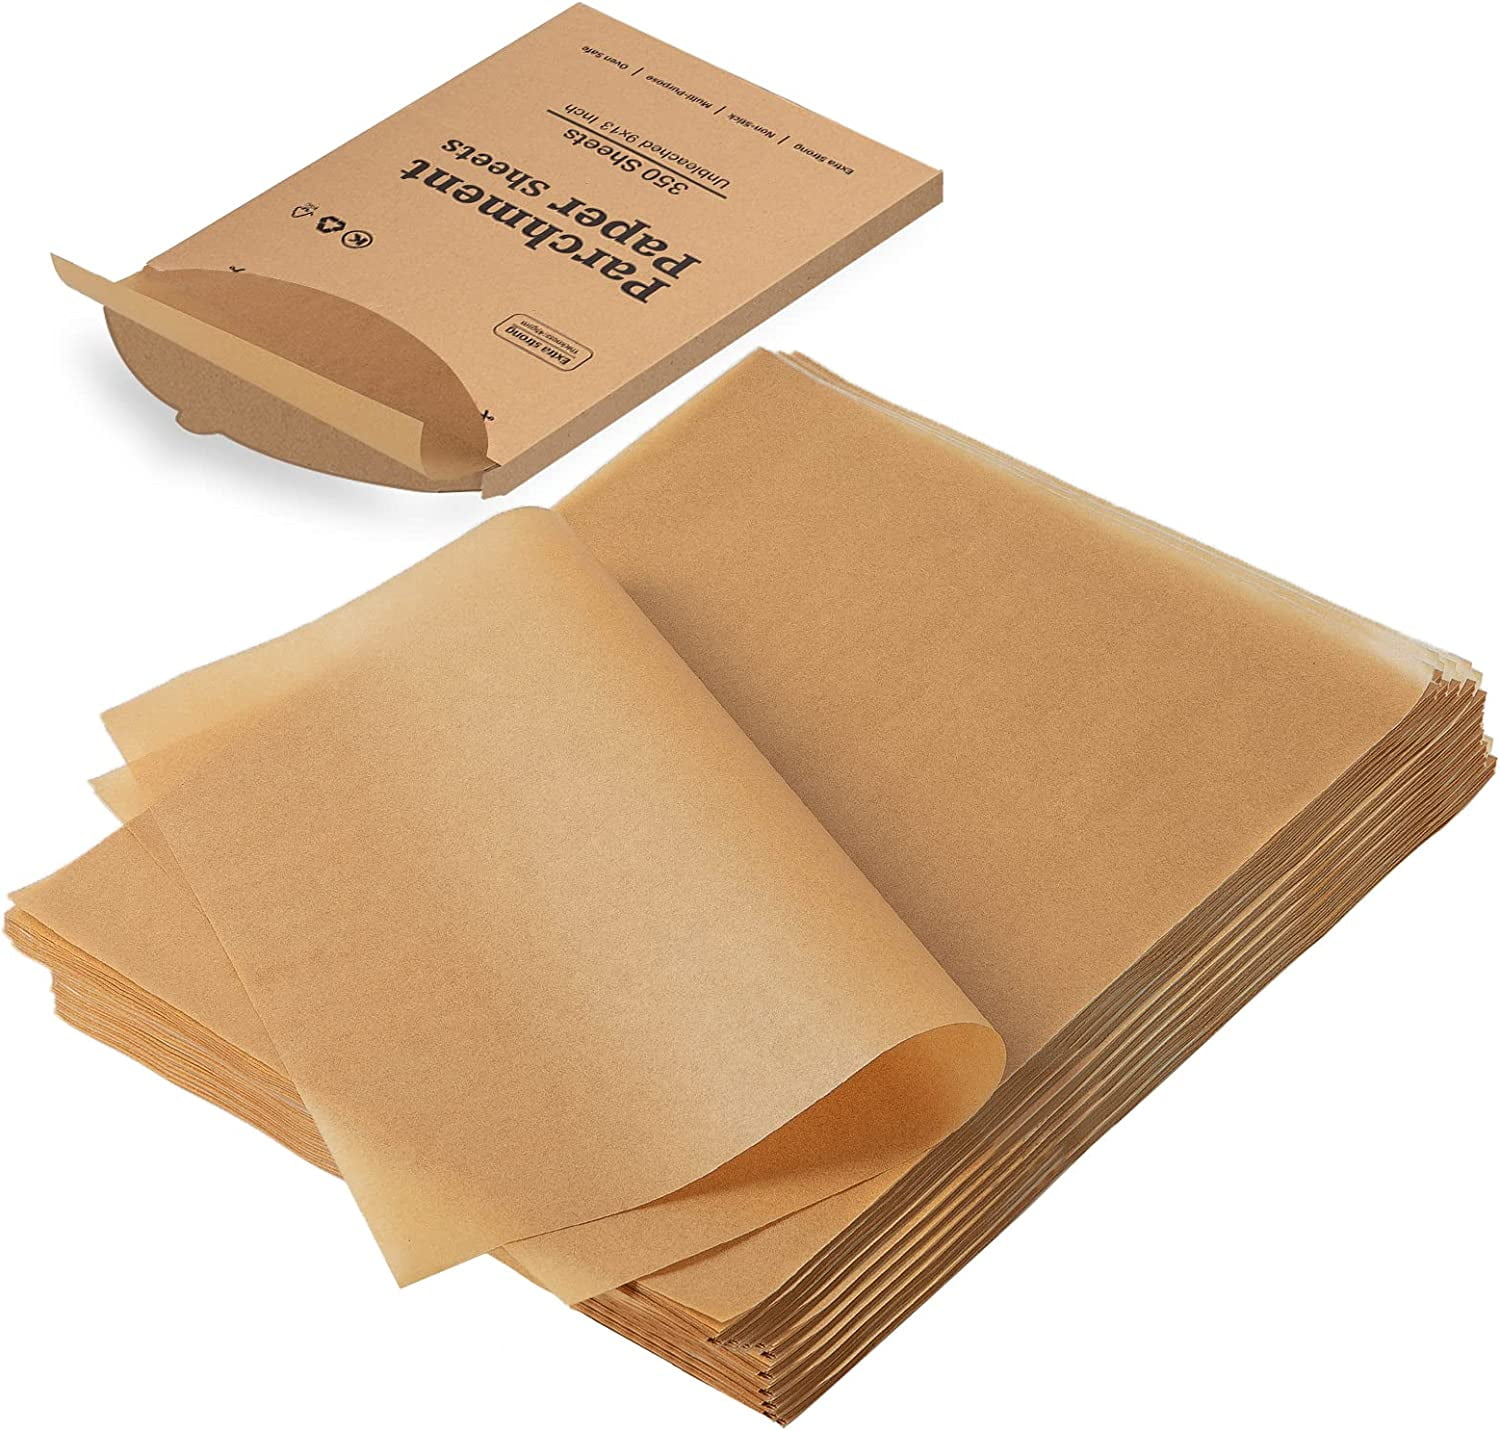  EBIGIC Parchment Paper Baking Sheets Unbleached 200 pcs 12 x 16  Inches Non-stick Waterproof Precut: Home & Kitchen